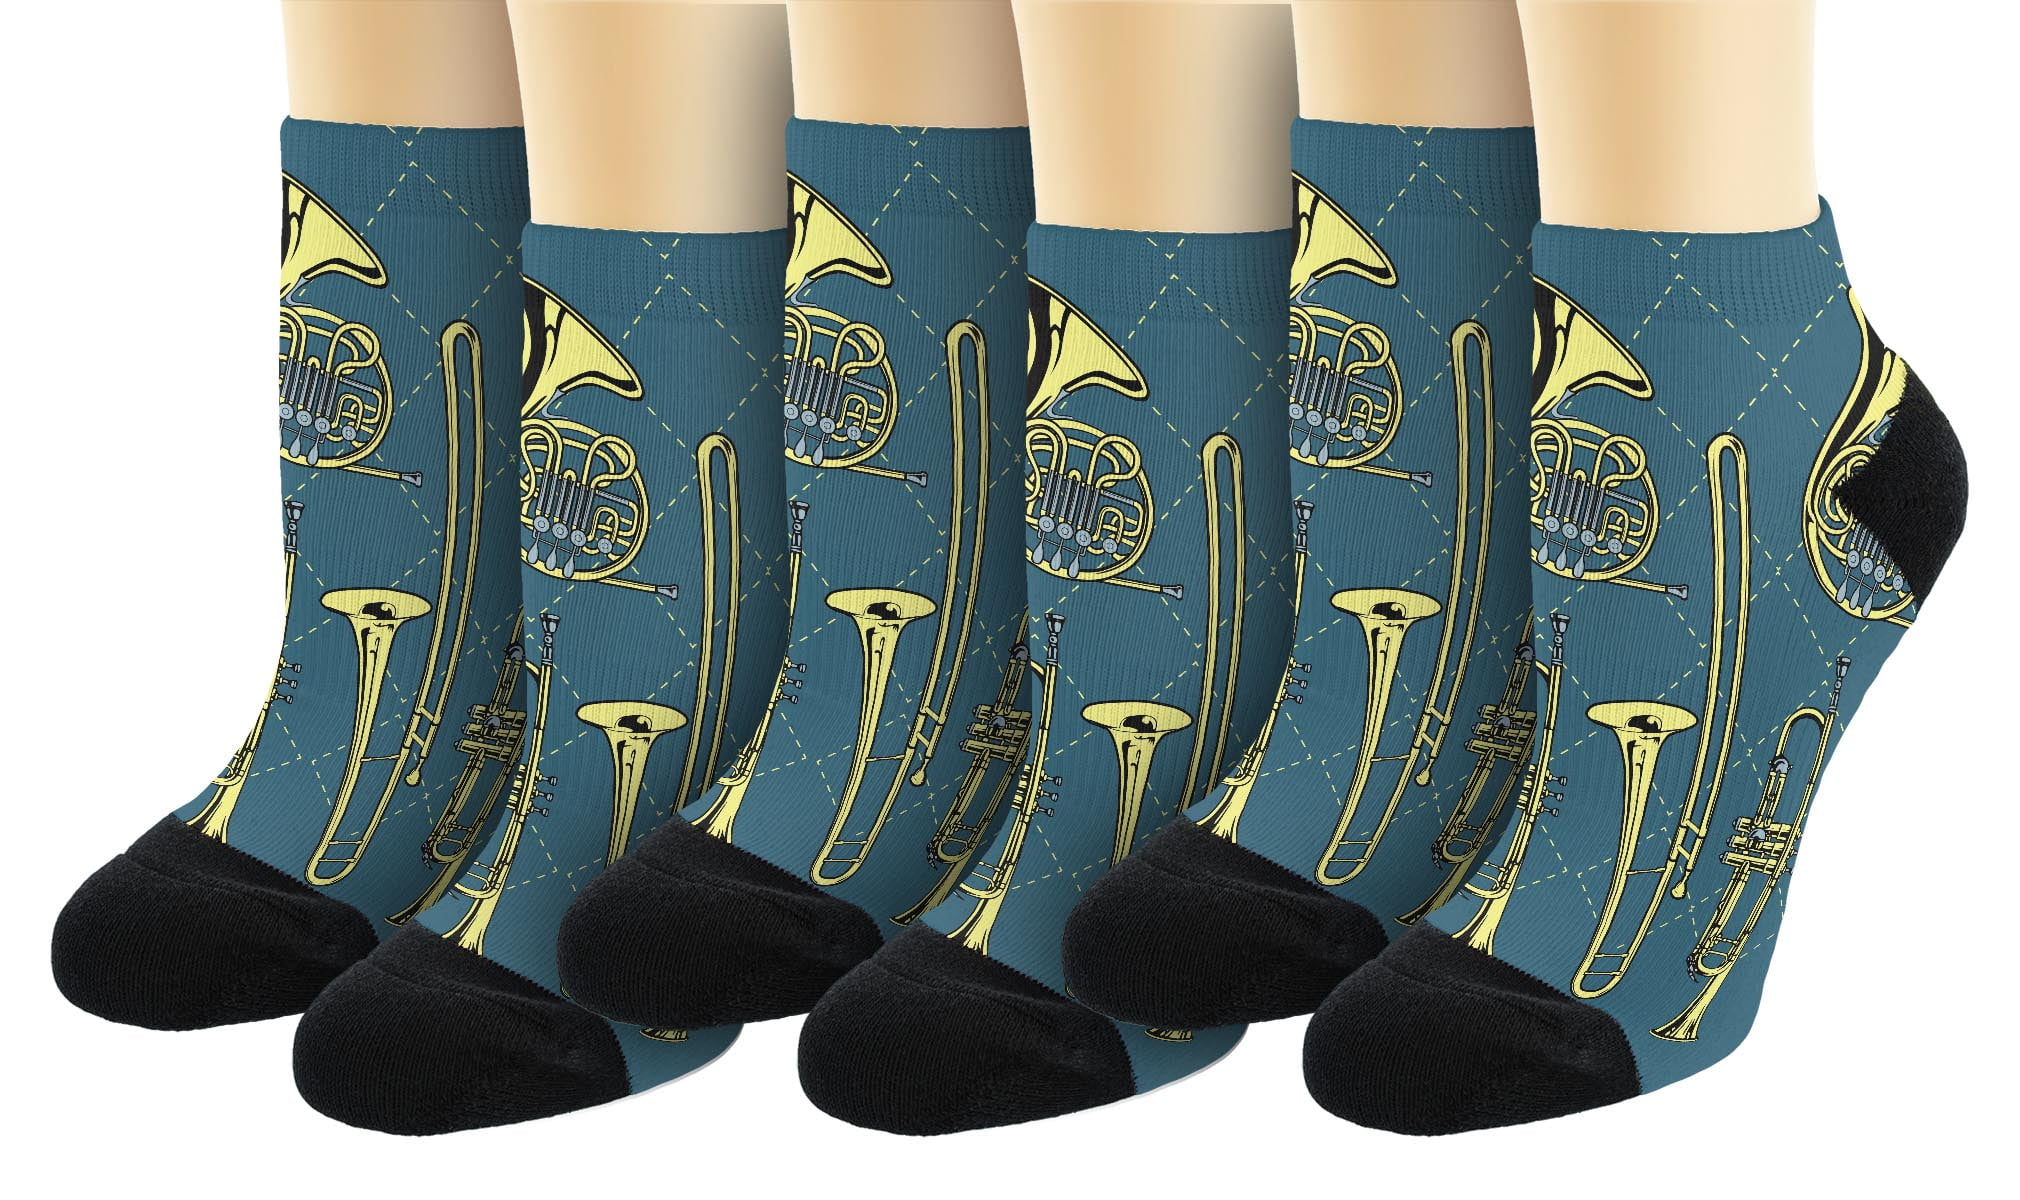 Golden Trumpet Novelty Cotton Crew Socks Fashion Ankle Dress Socks For Men&Women